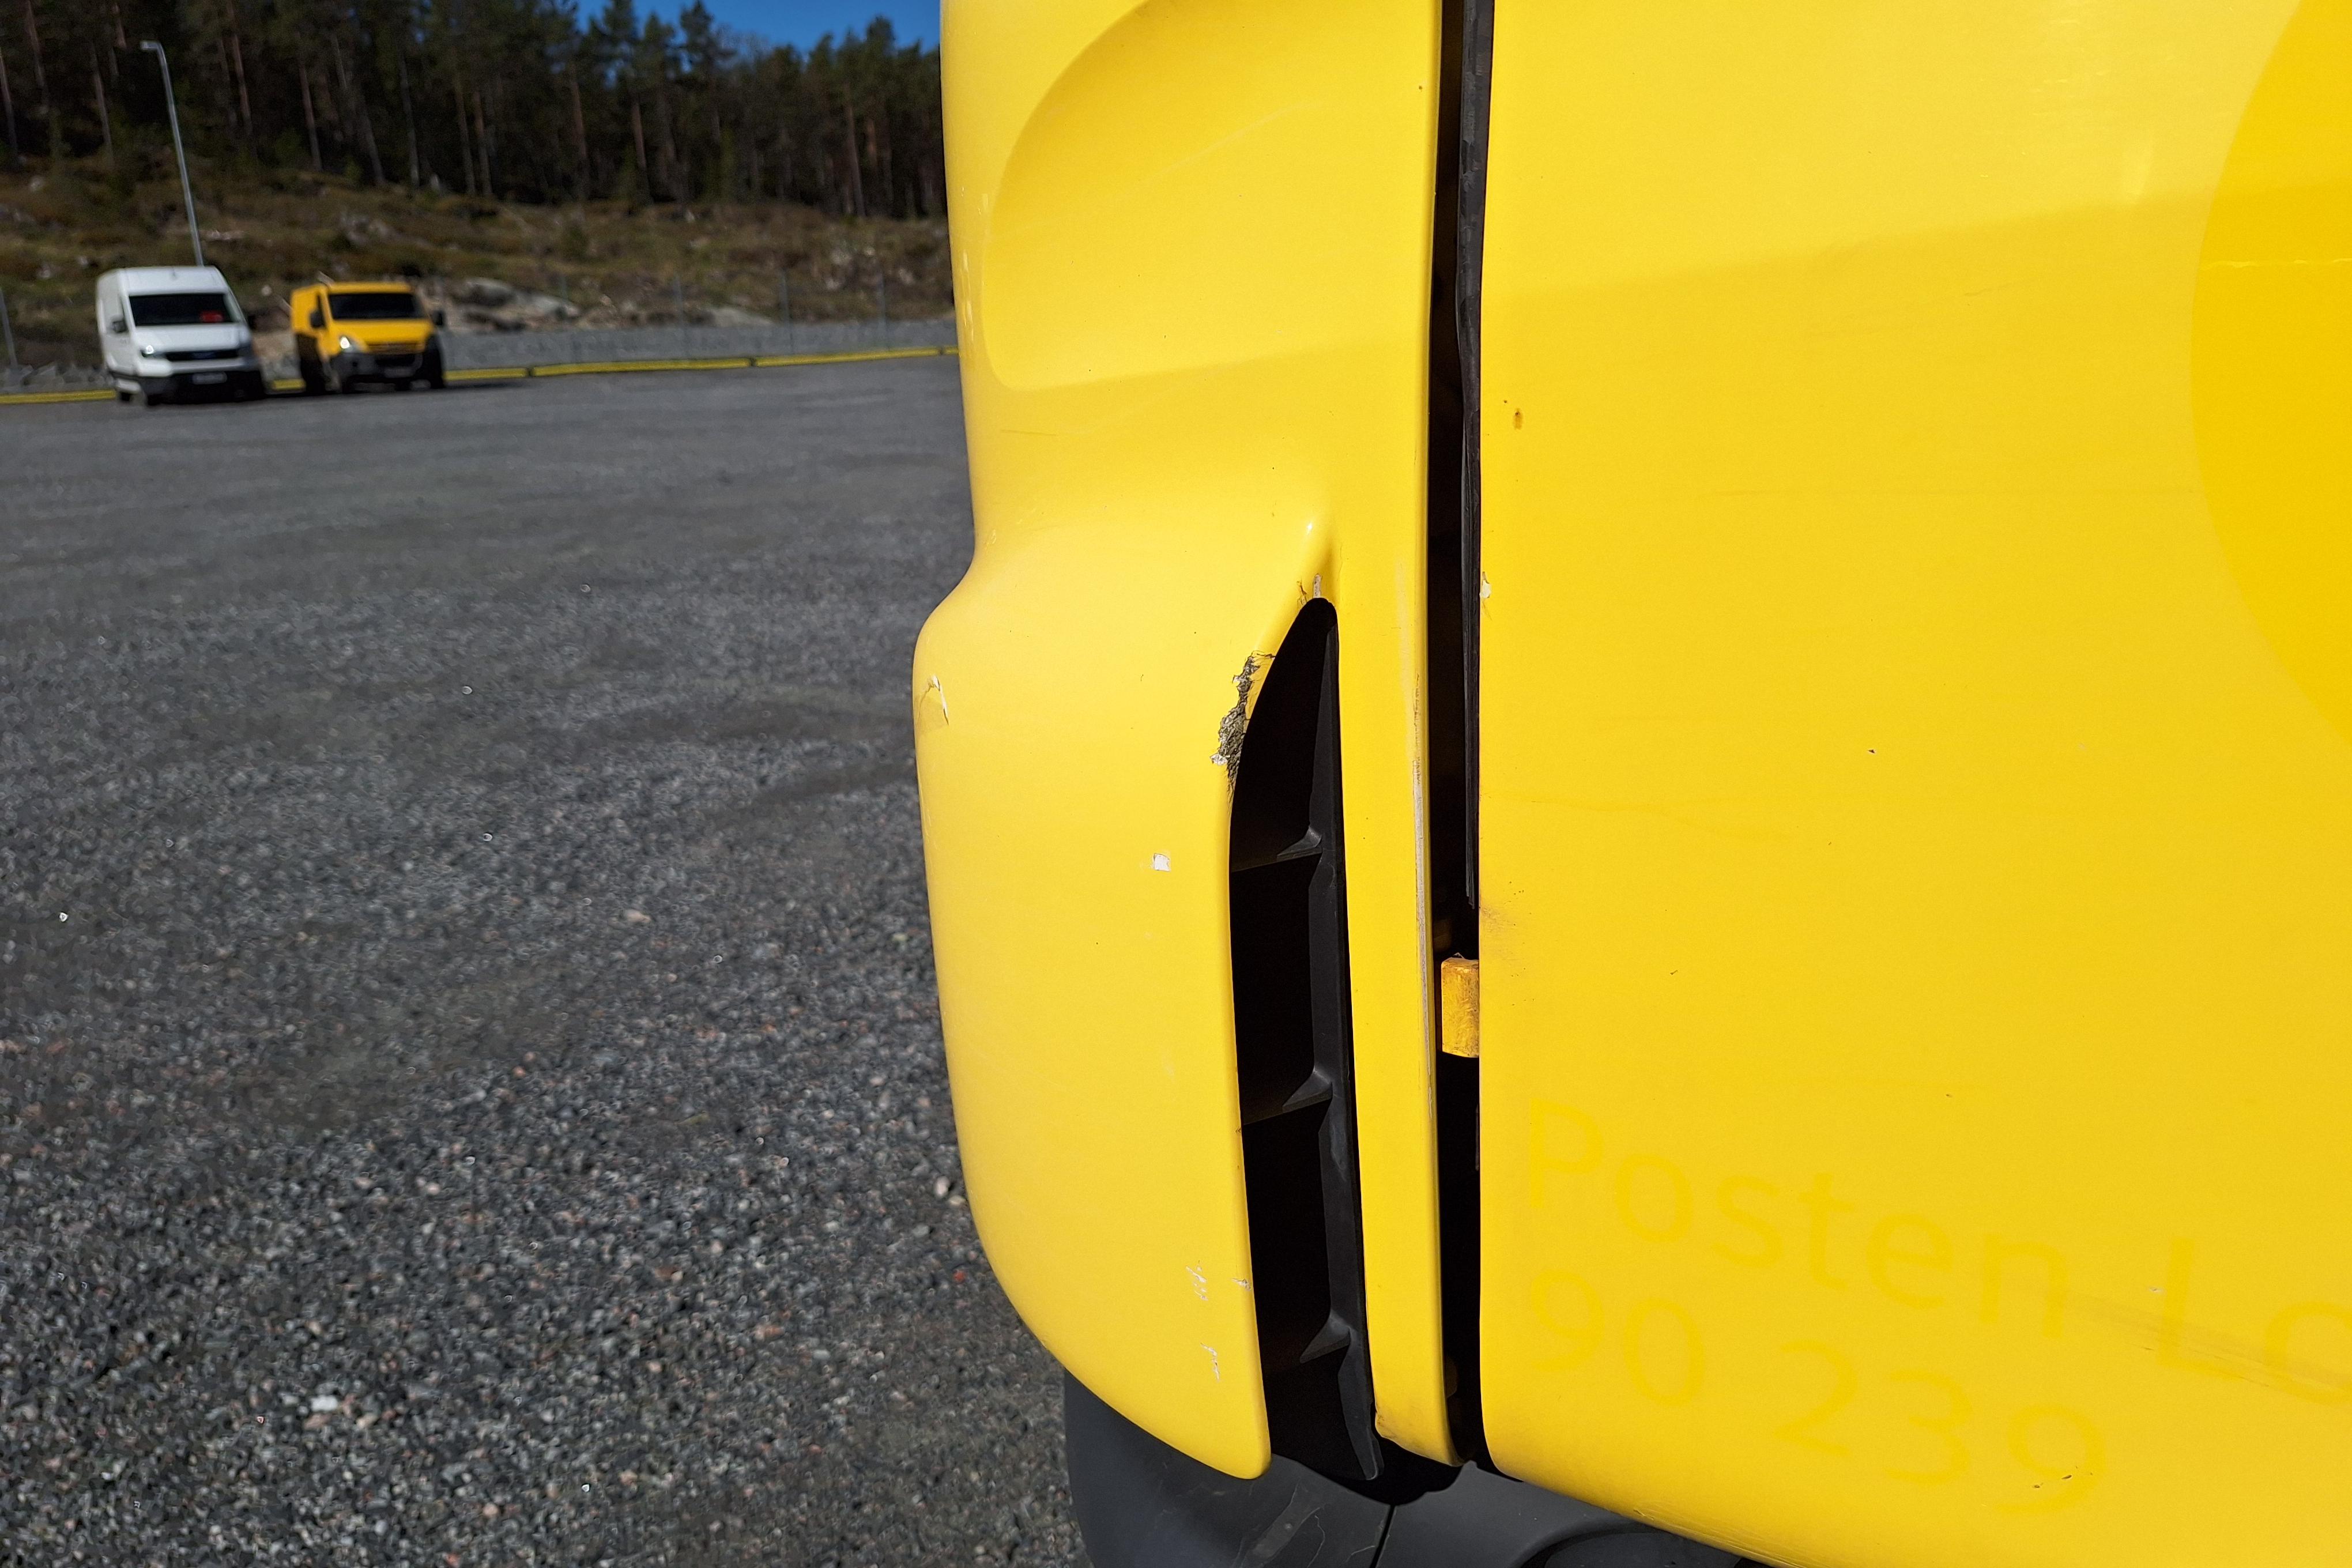 Scania P230 - 406 071 km - Automatic - yellow - 2013